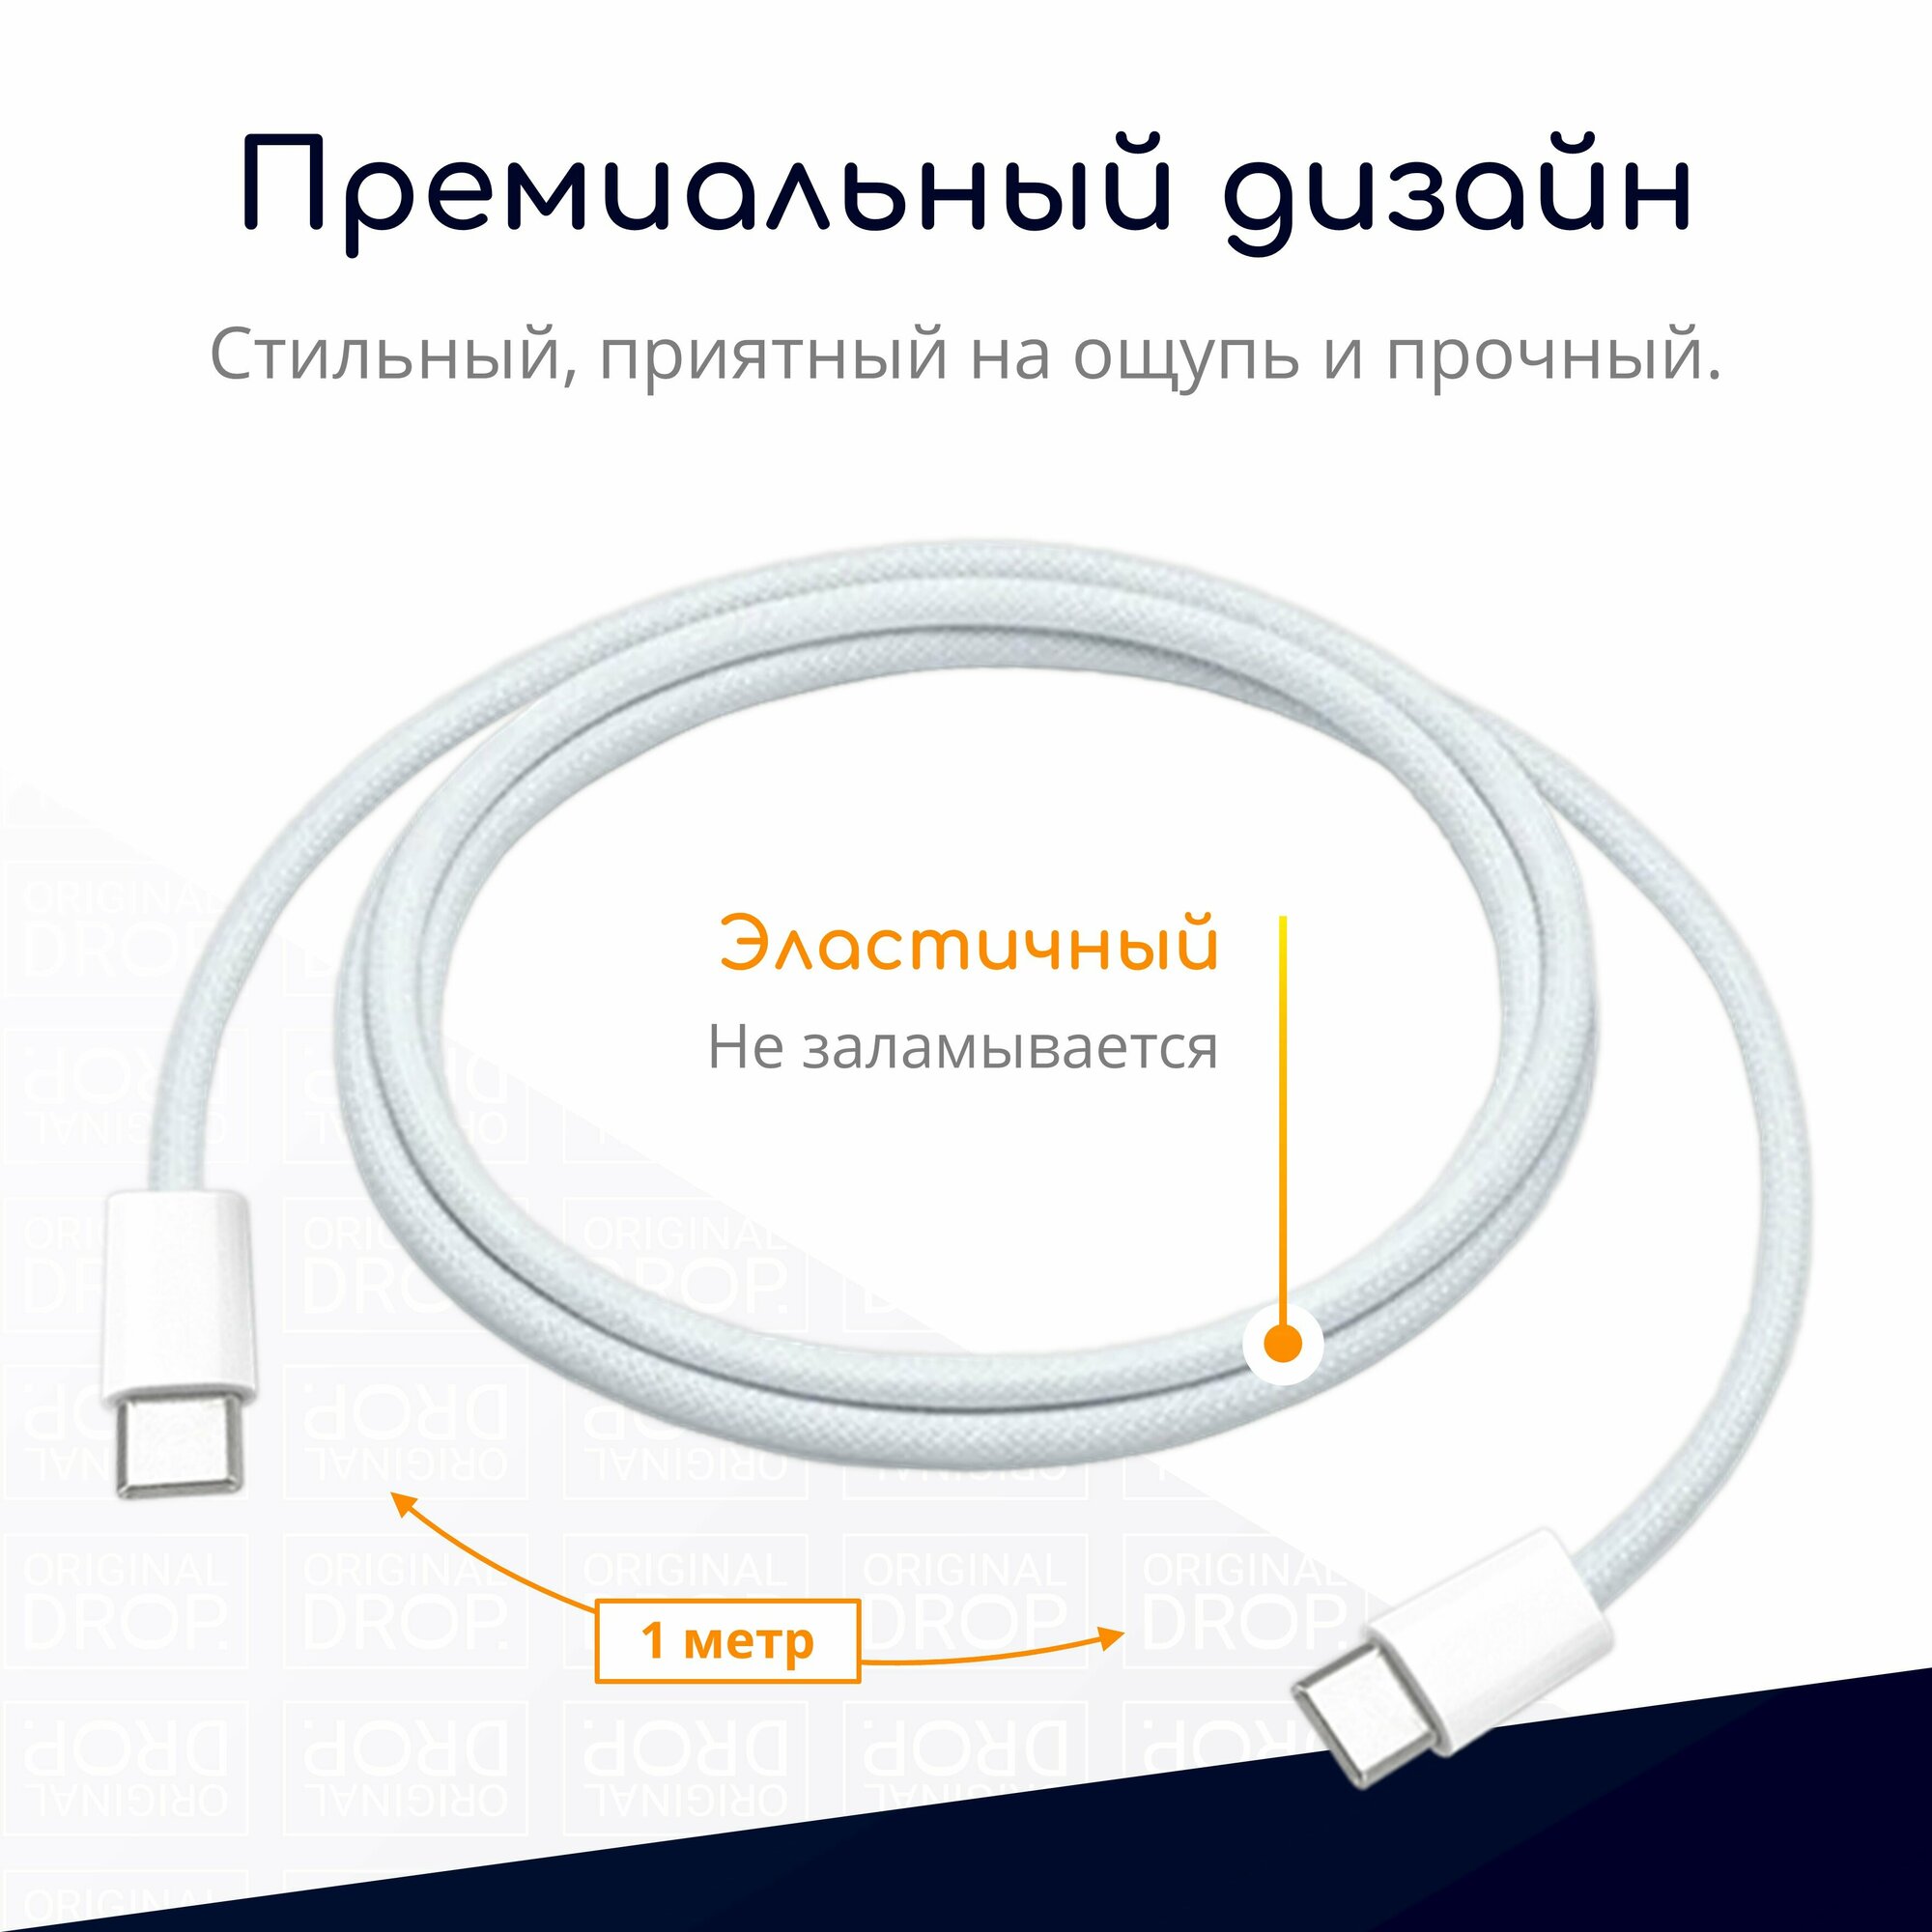 Комплект из 2 плетеных кабелей Type-C для iPhone 15 Pro Max Pro Plus 1 метр белые / Original drop